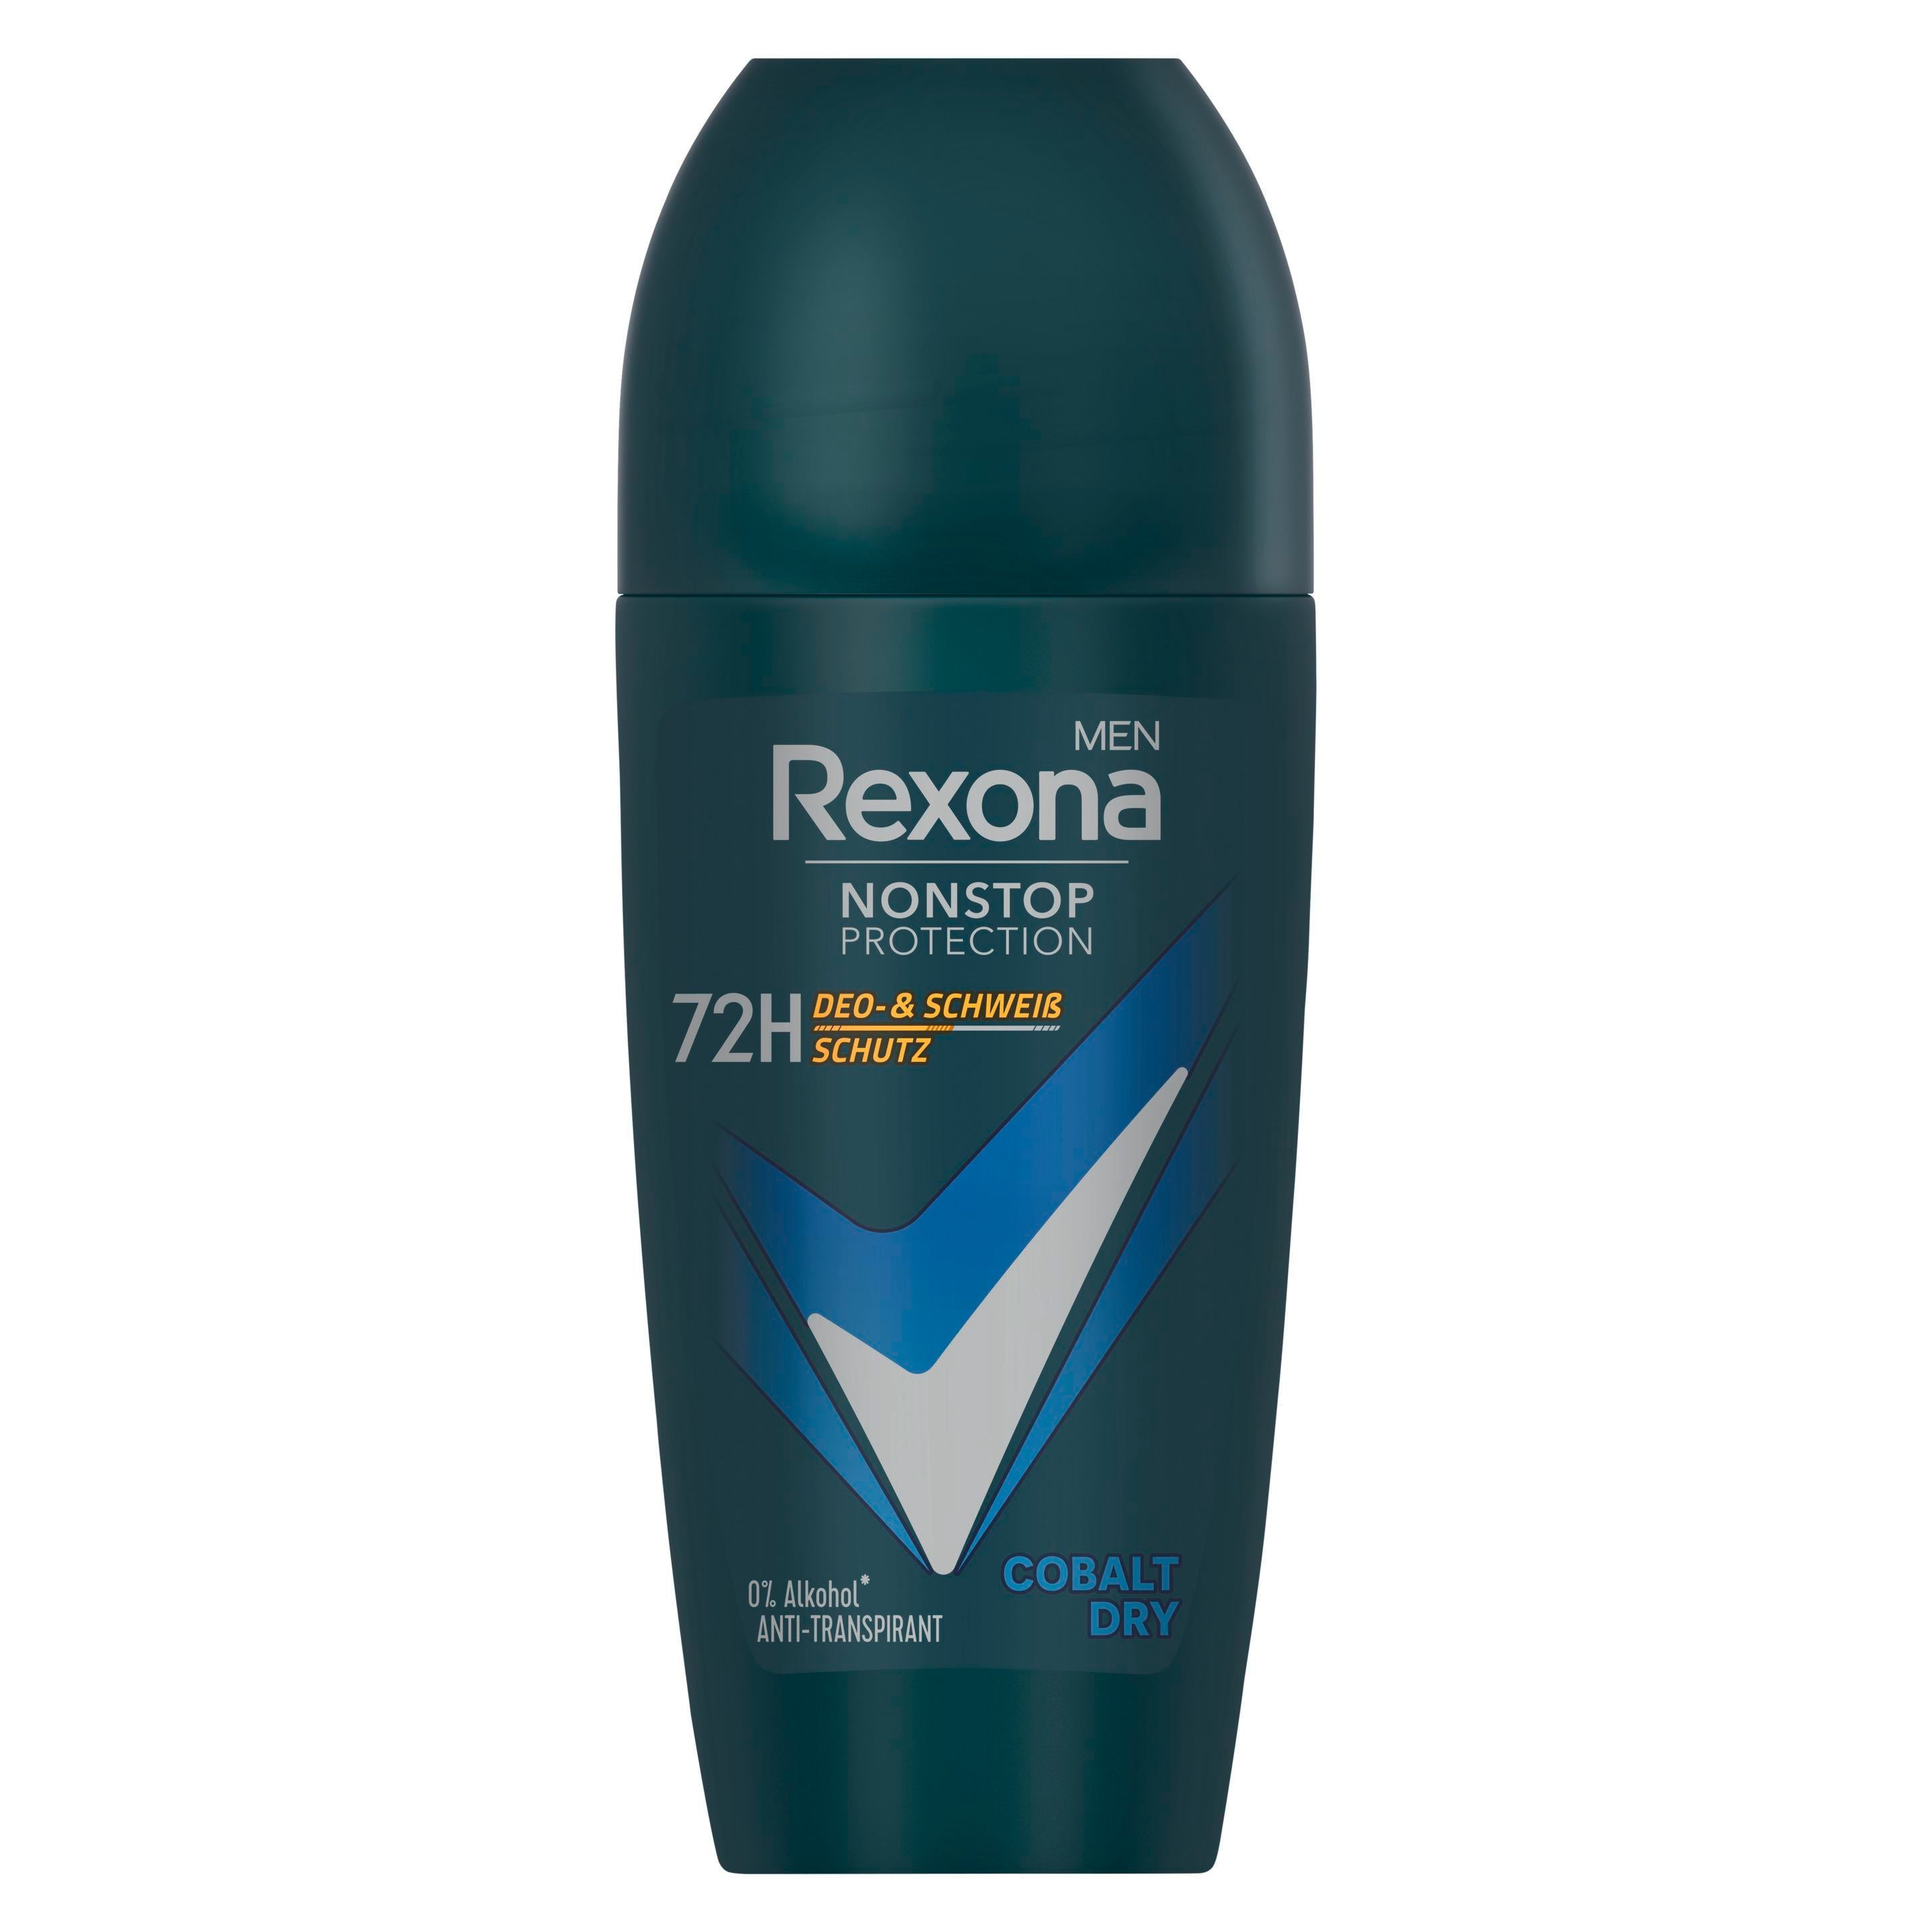 Rexona Men Nonstop Protection Anti Transpirant Deo Roll-On Cobalt Dry mit 72 Stunden Schutz vor Schweiß und Körpergeruch 50 ml